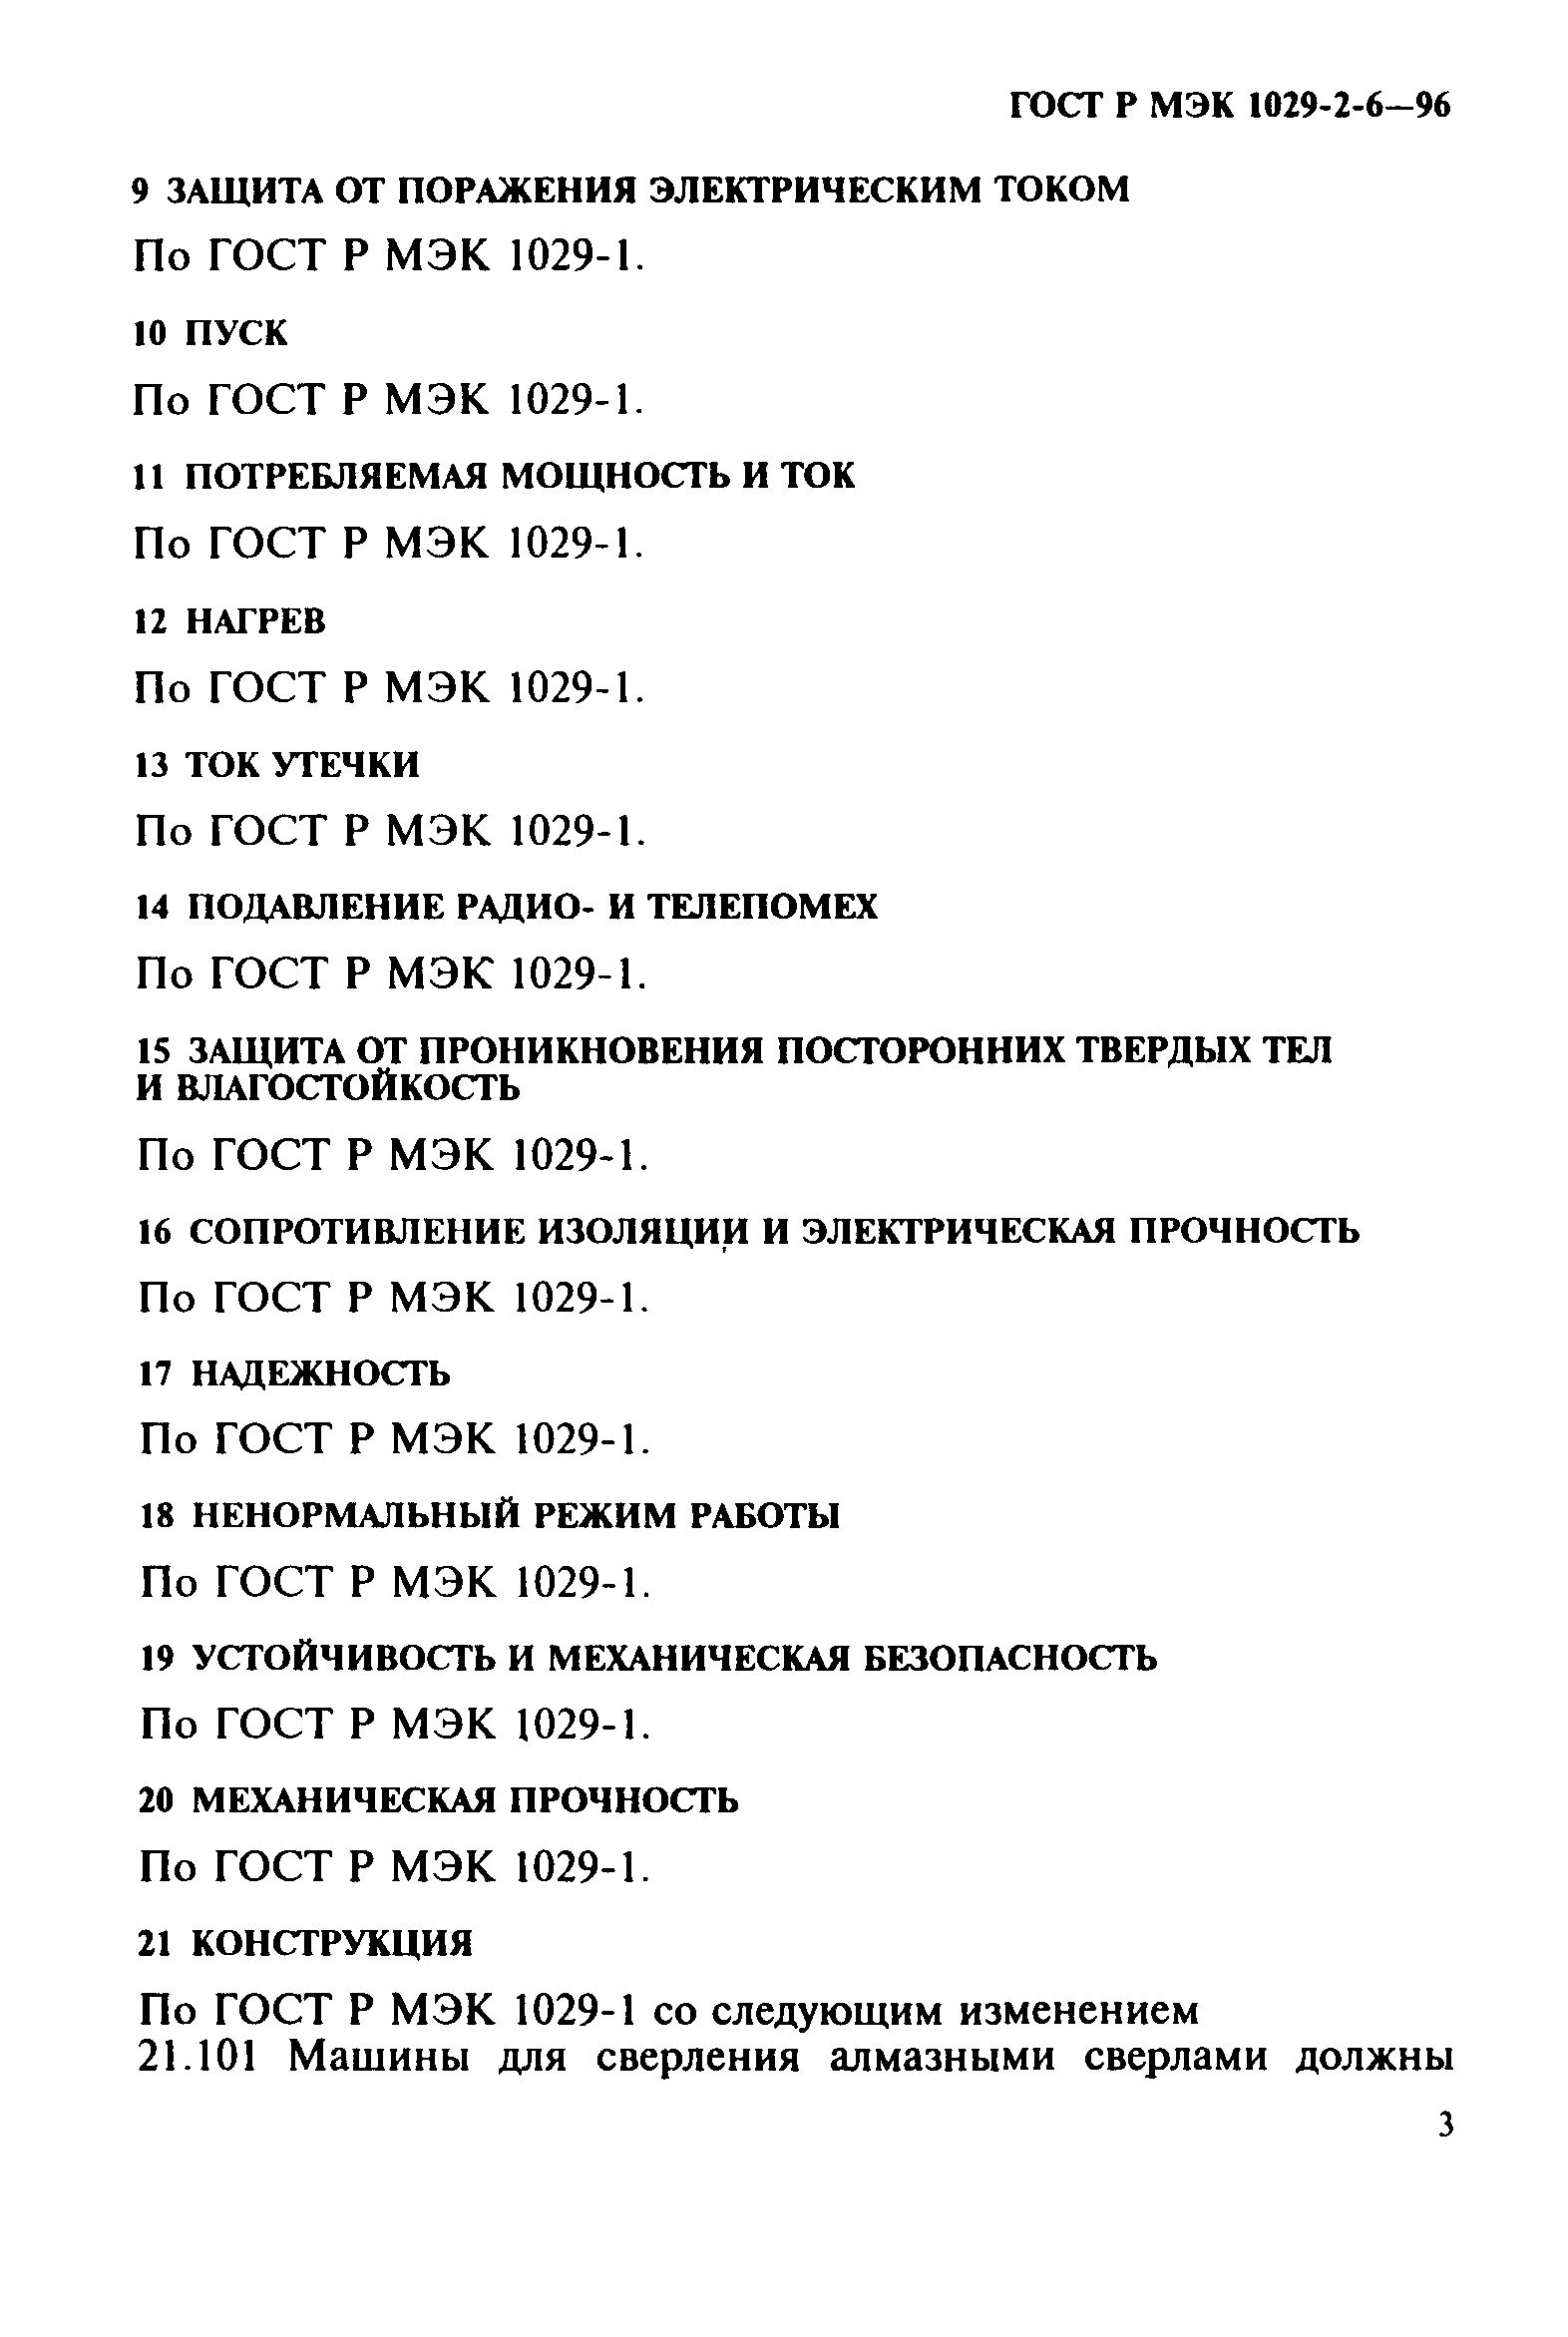 ГОСТ Р МЭК 1029-2-6-96